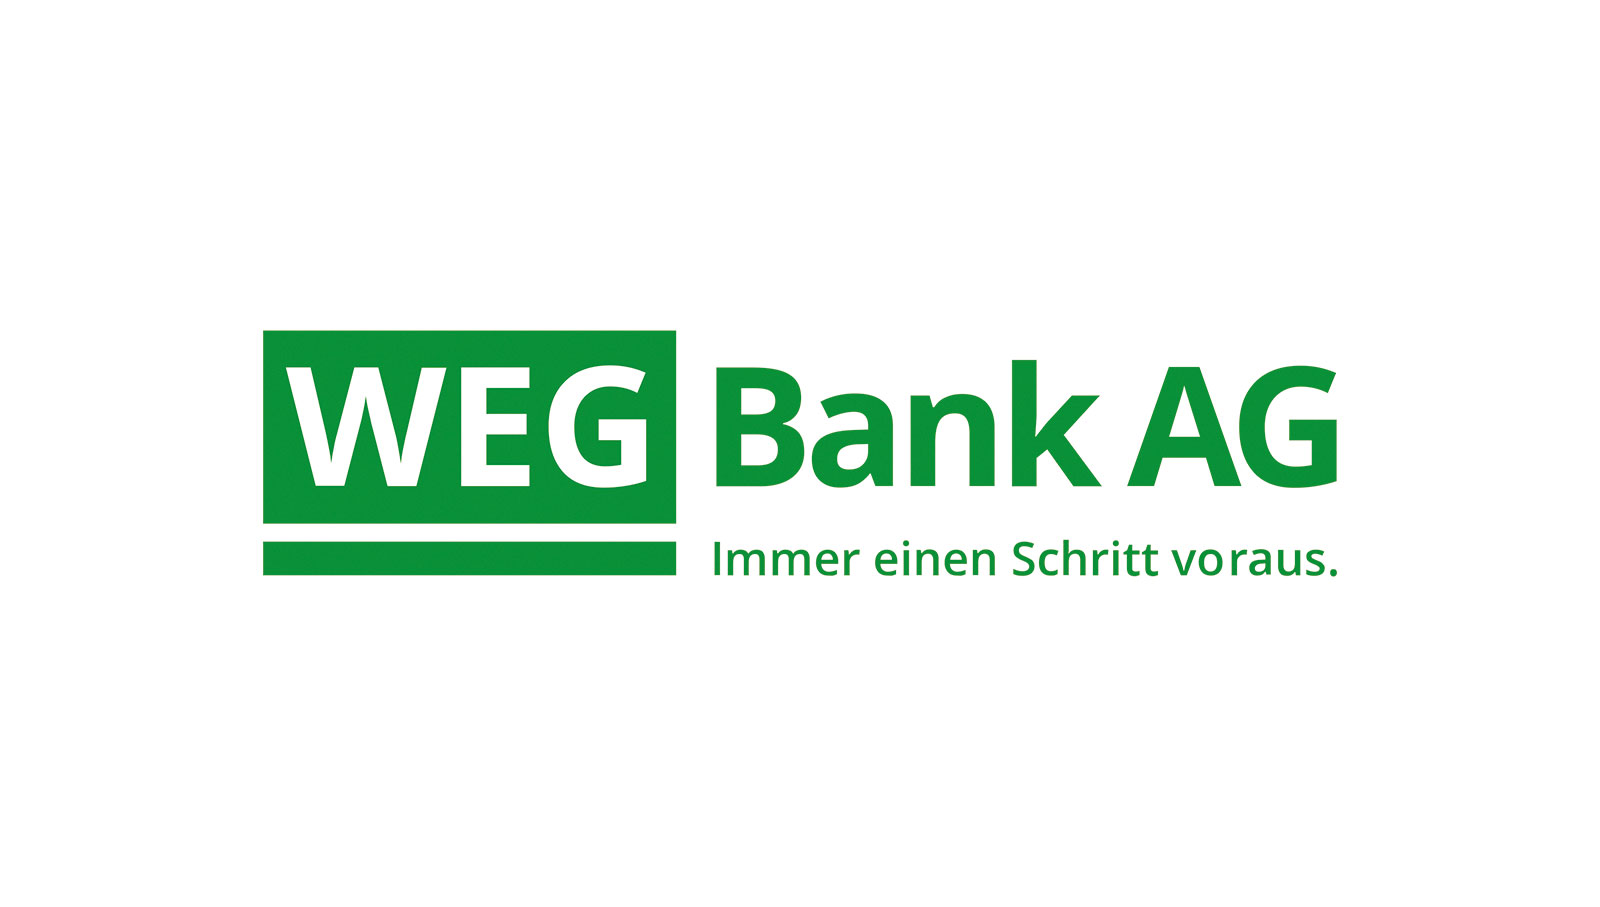 WEG Bank AG Logo - Immer einen Schritt voraus